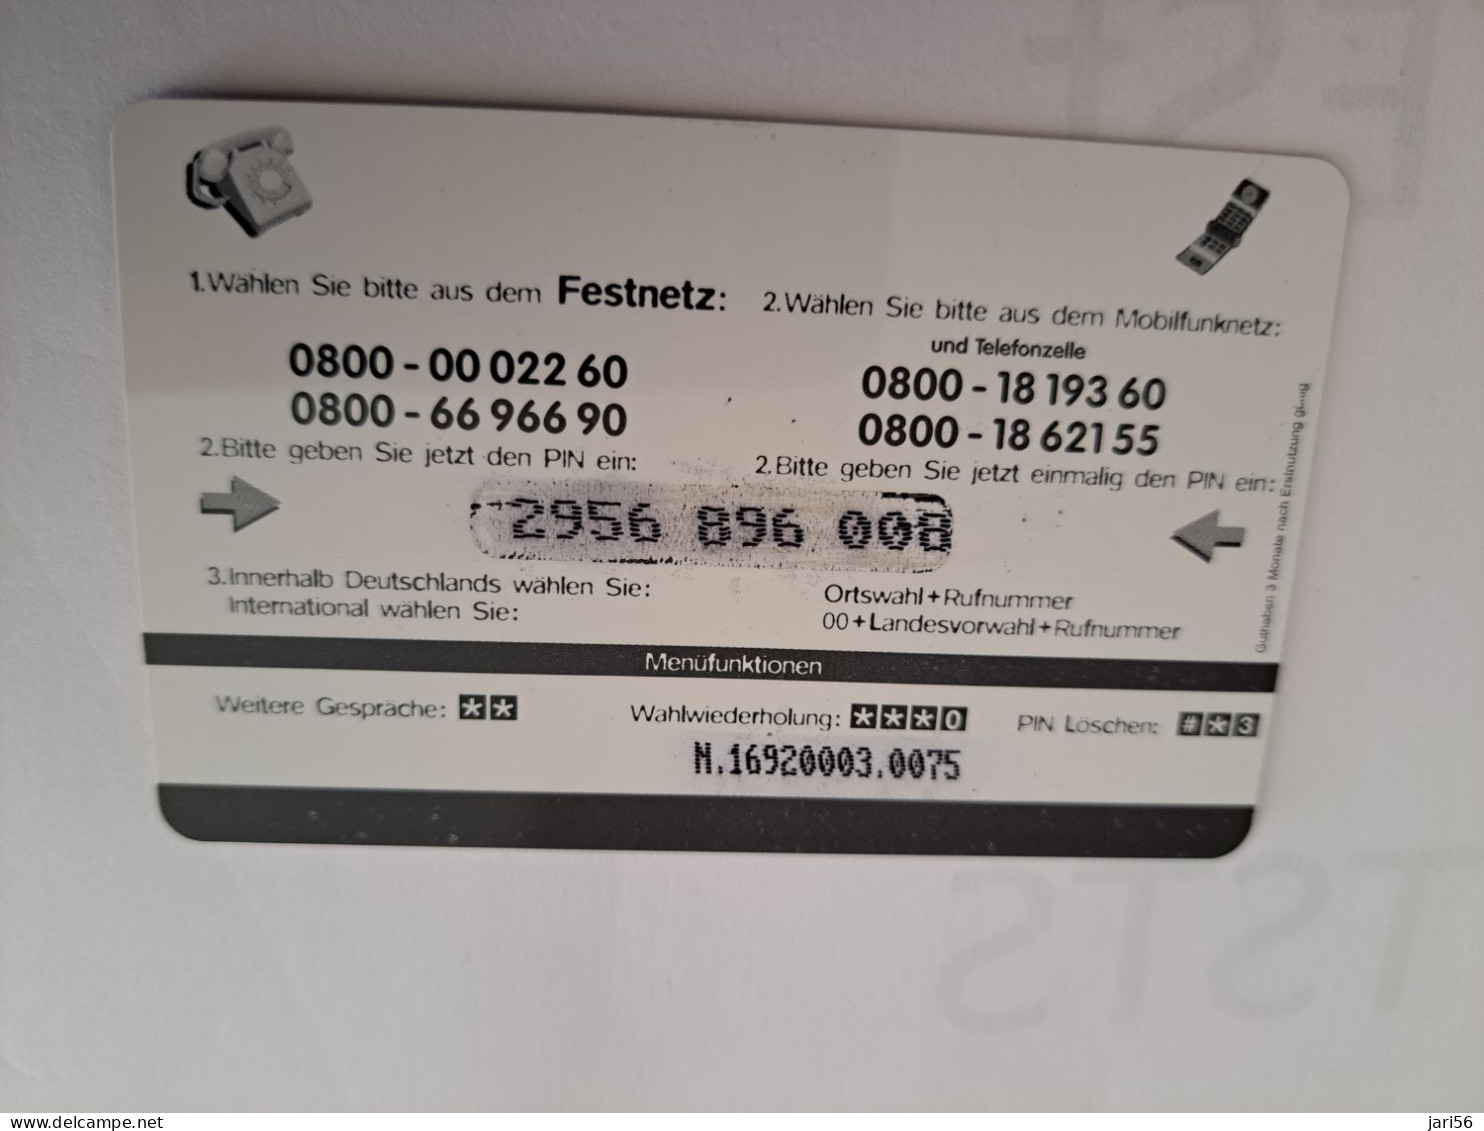 DUITSLAND/GERMANY  € 6,- / PLANET/ PIGEON BIRD   ON CARD        Fine Used  PREPAID  **16531** - GSM, Voorafbetaald & Herlaadbare Kaarten